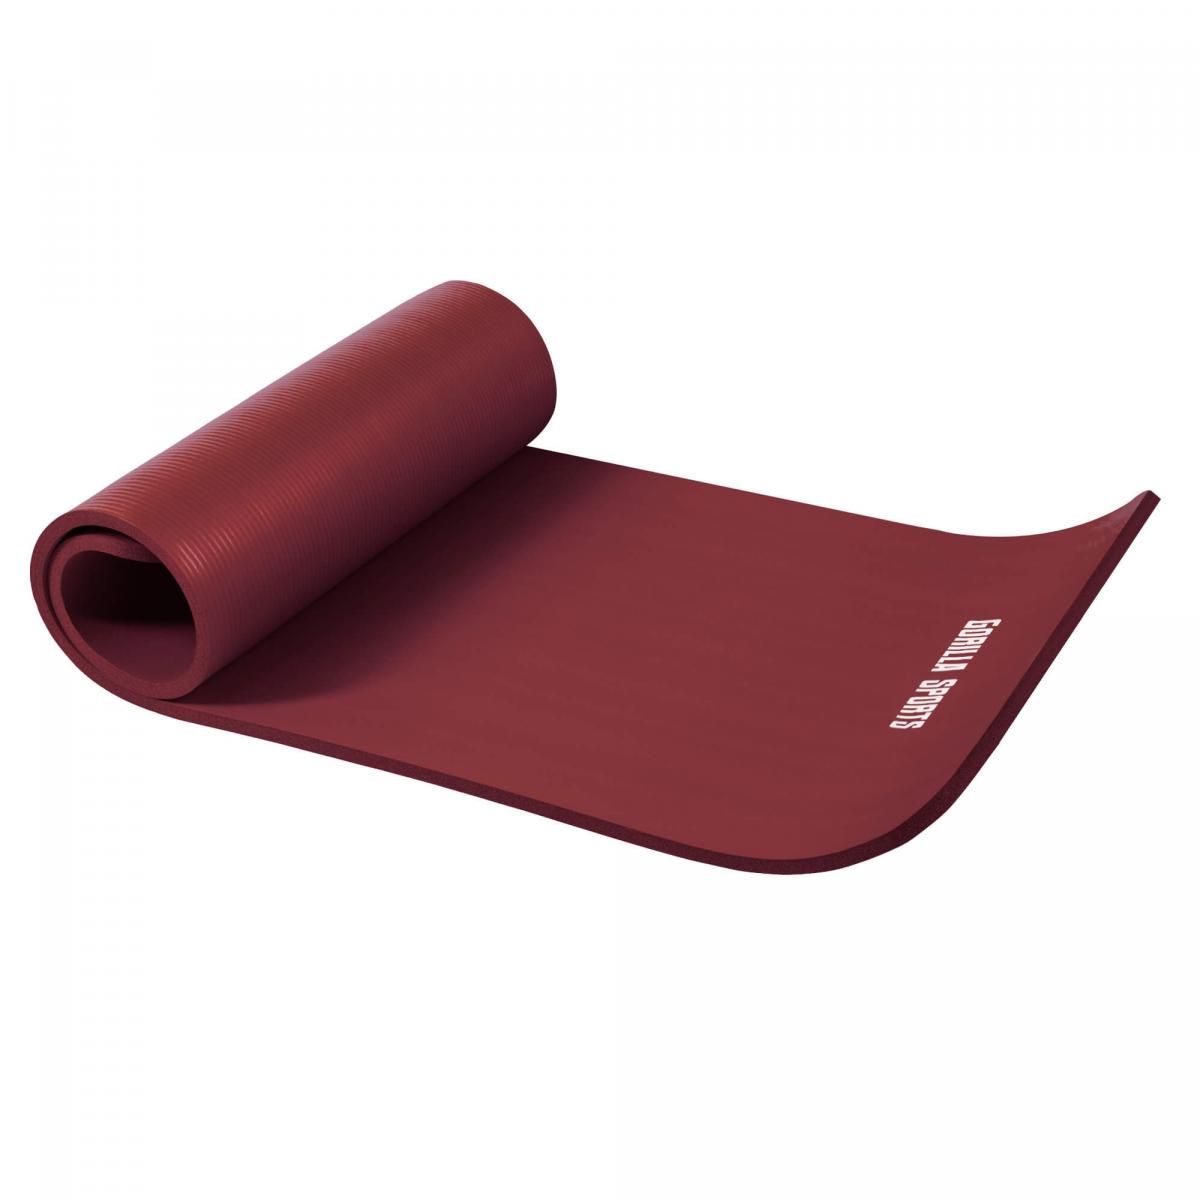 Petit tapis de yoga en mousse - 190 x 60 x 1,5 cm (Yoga - Pilates - sport Ã domicile) Ruby